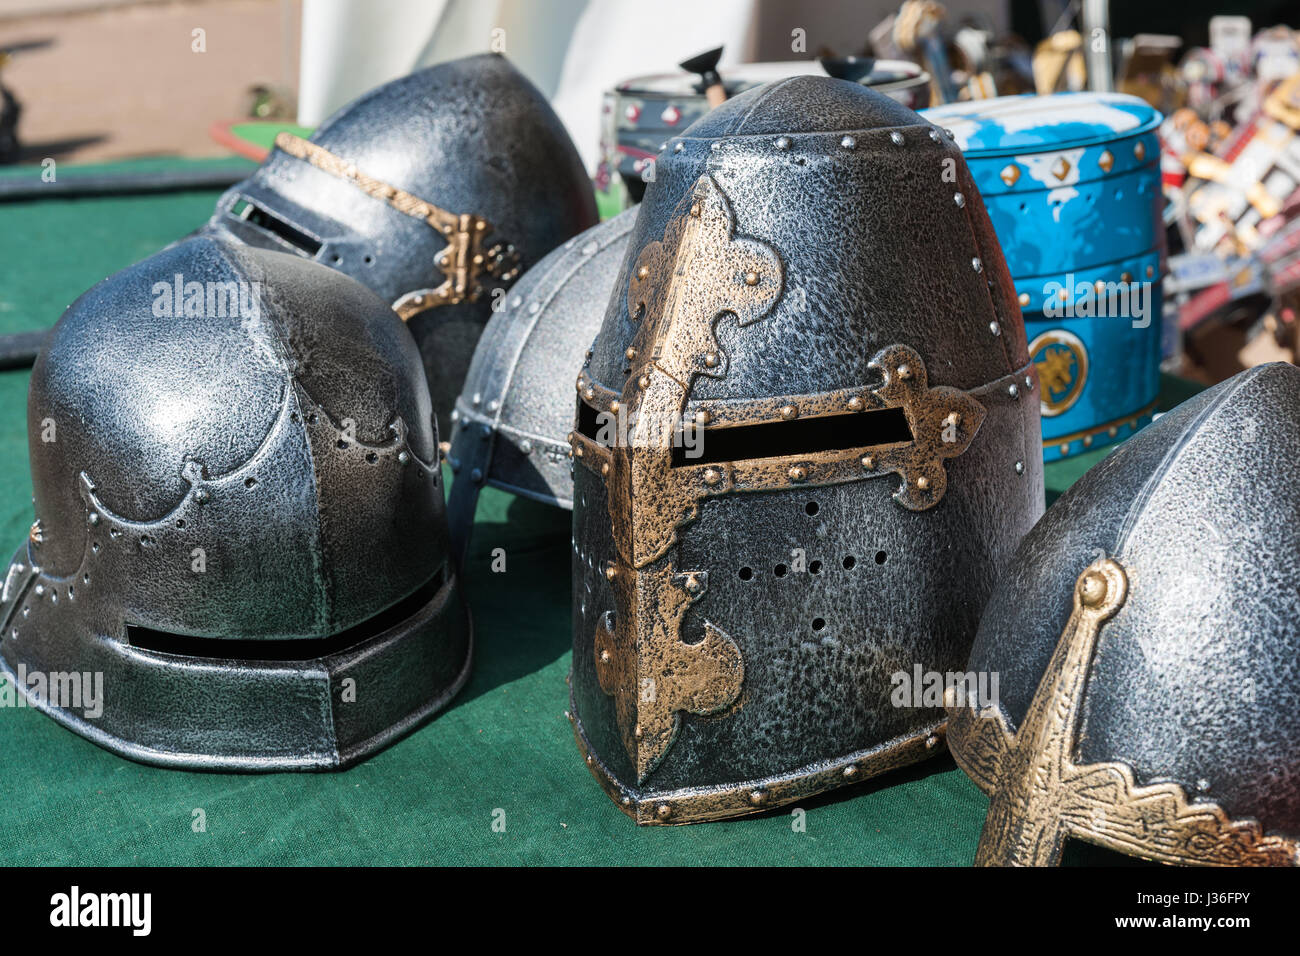 Les casques de fer de l'armure de chevalier sur l'affichage pour la vente à une fête médiévale. Personne autour. Banque D'Images